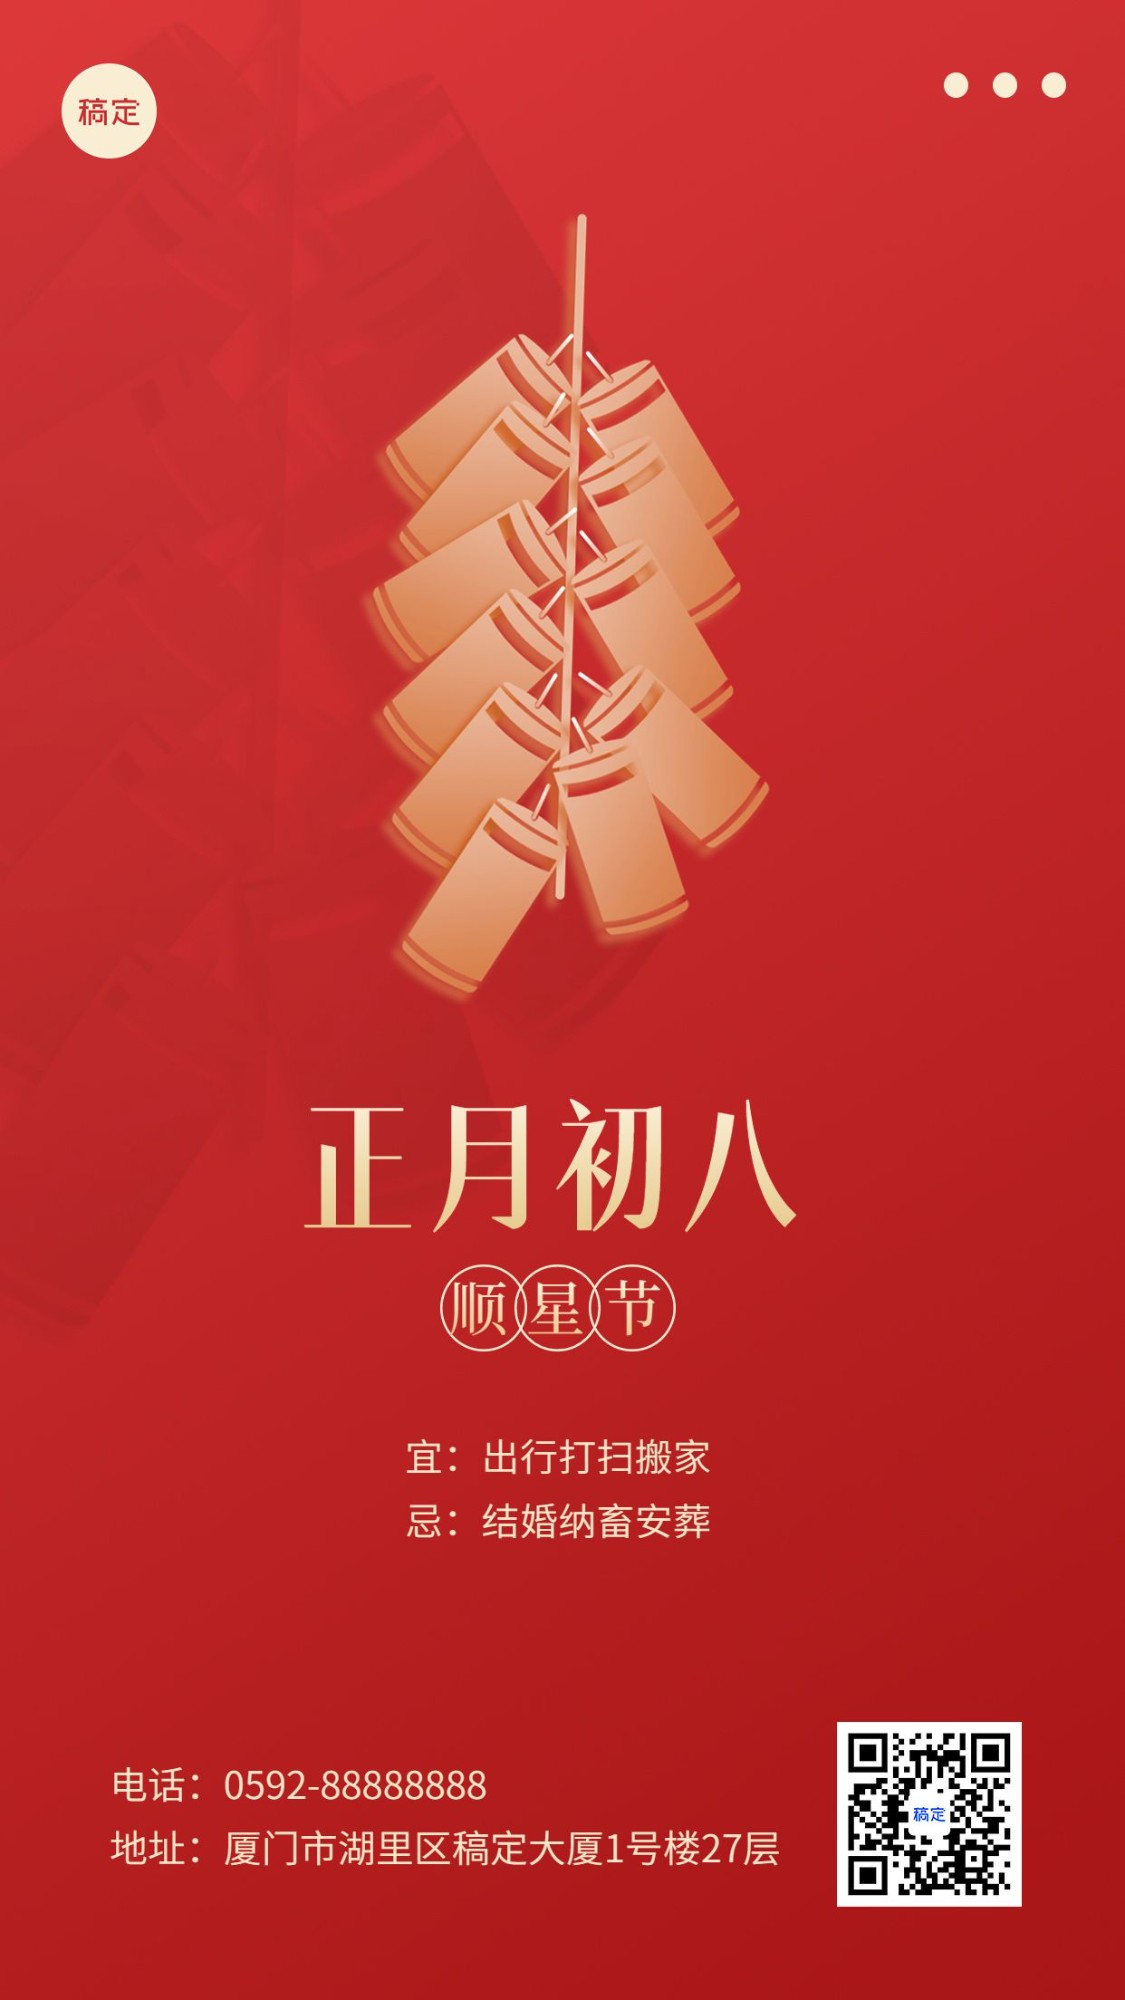 春节新年祝福正月初八简约排版套系手机海报